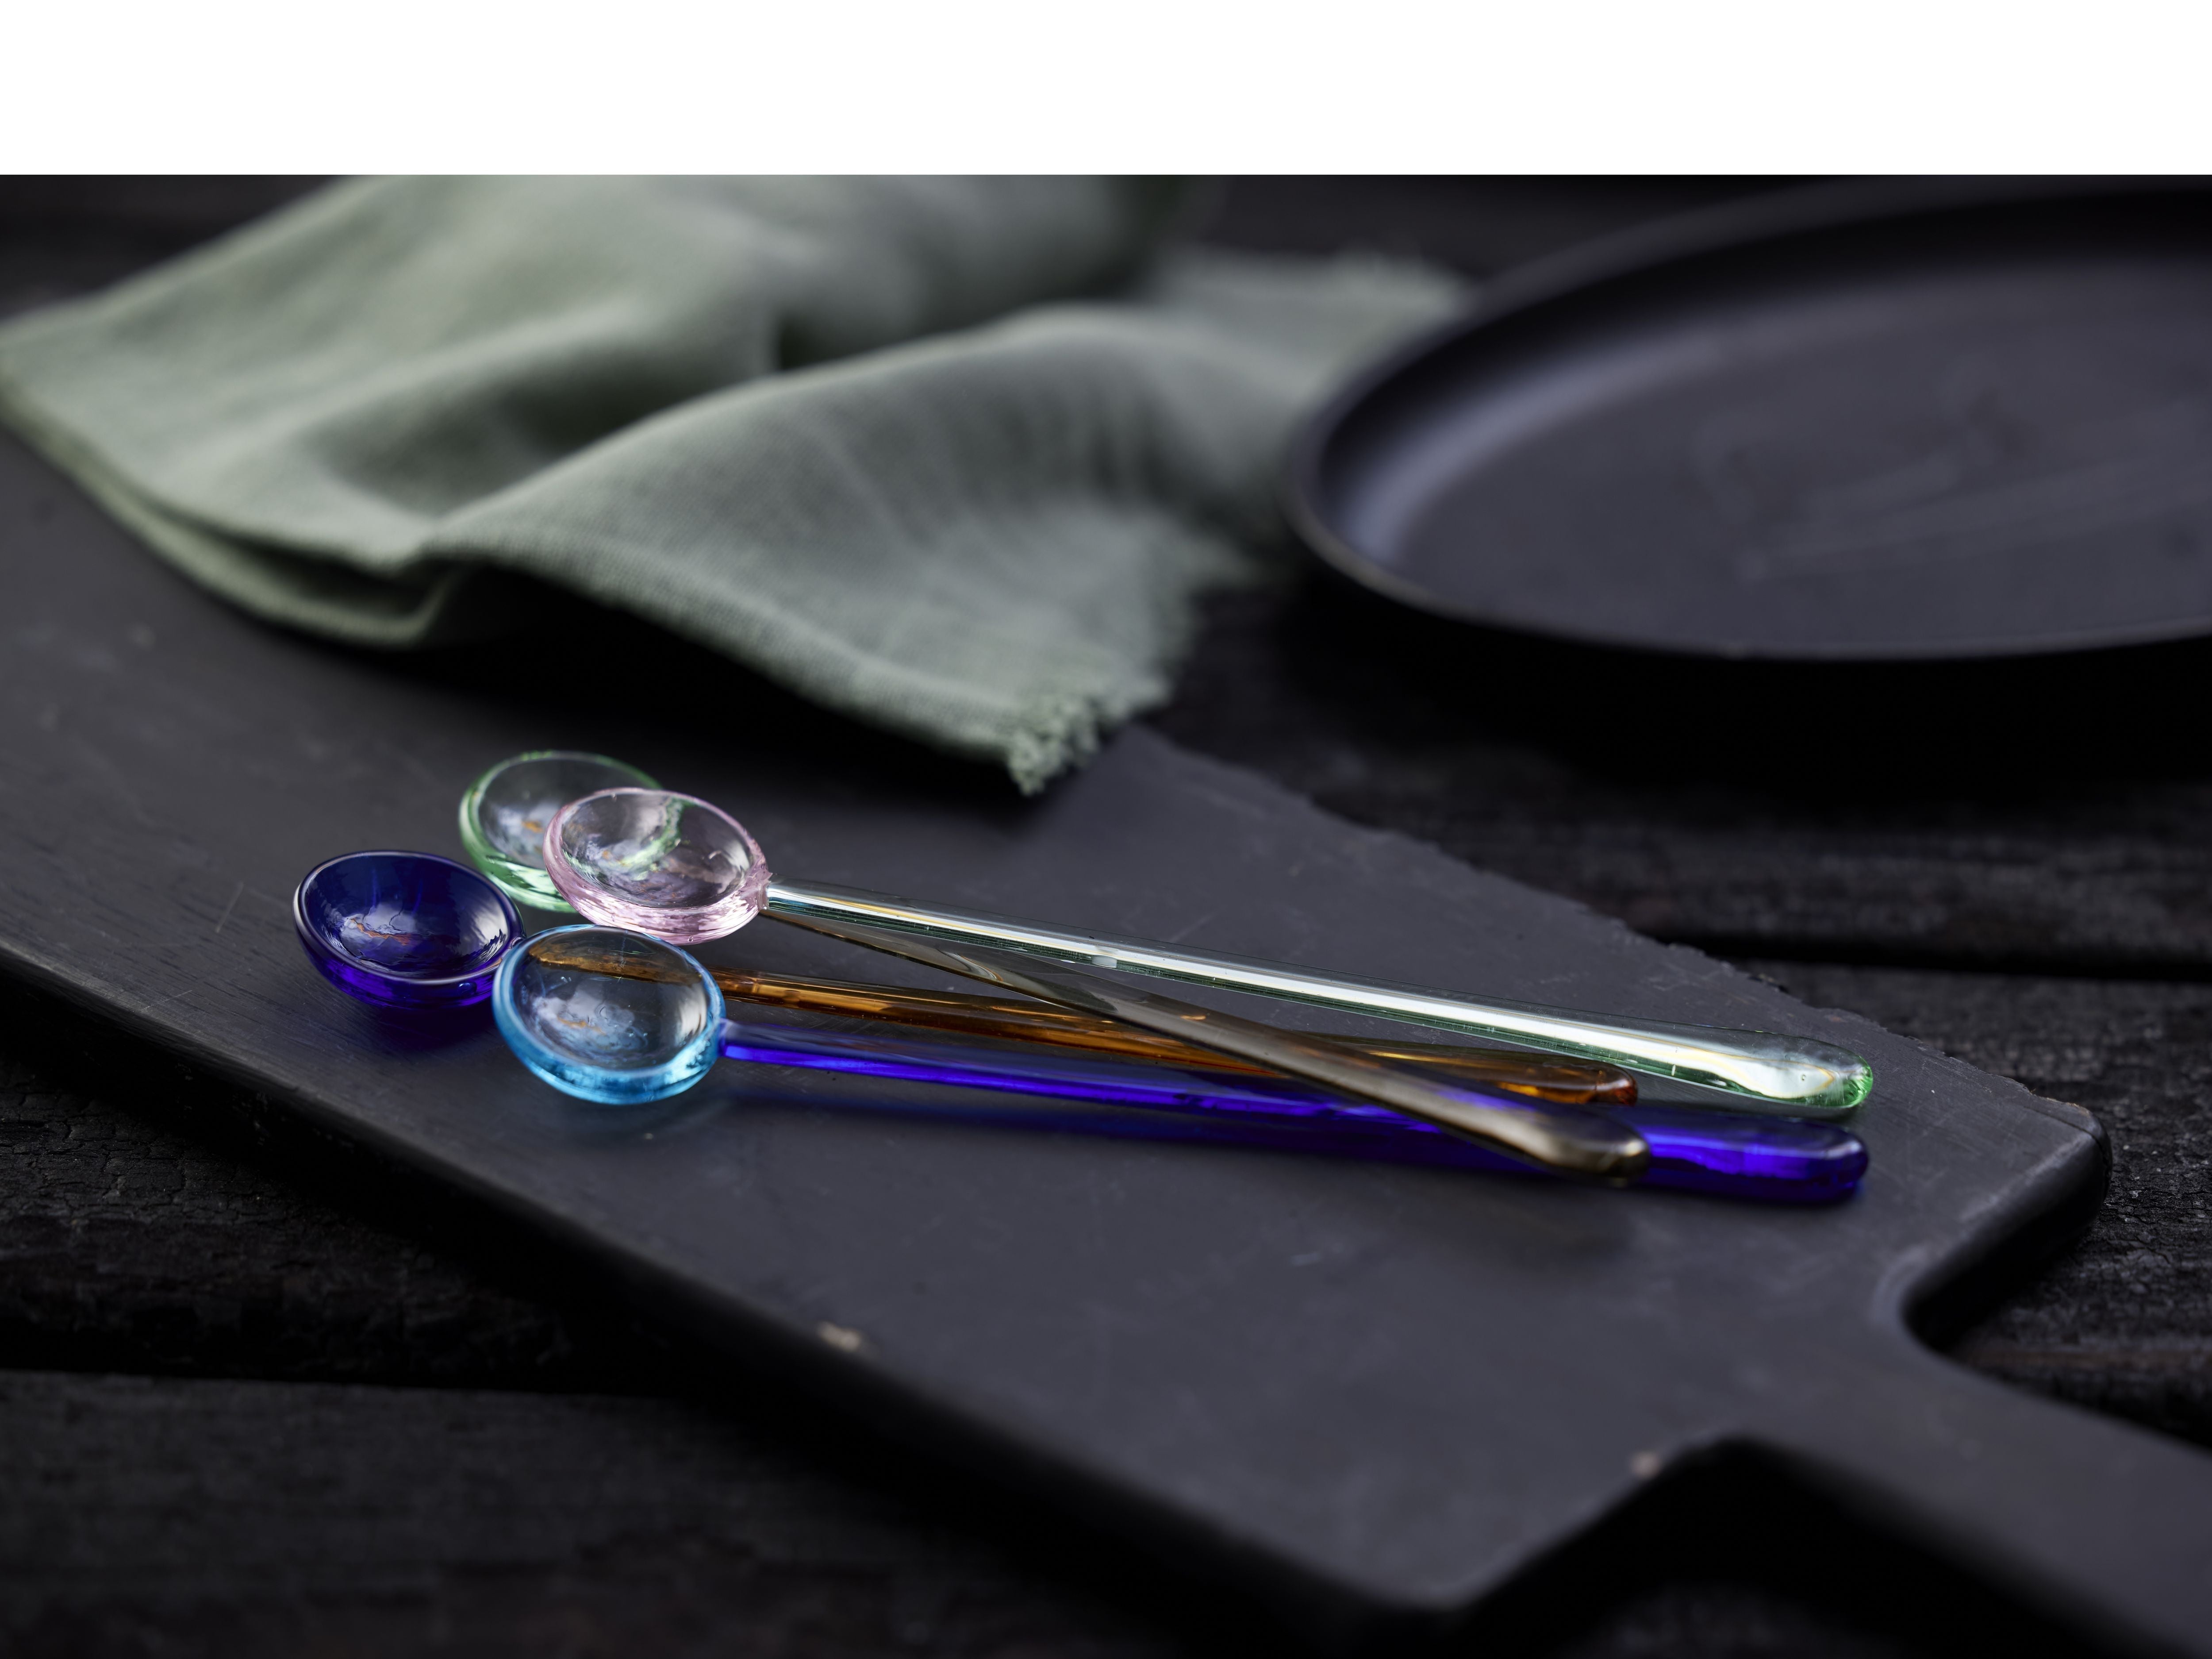 Lyngby Glas Torino Glass Spoon 18 cm 4 stk. Røv.